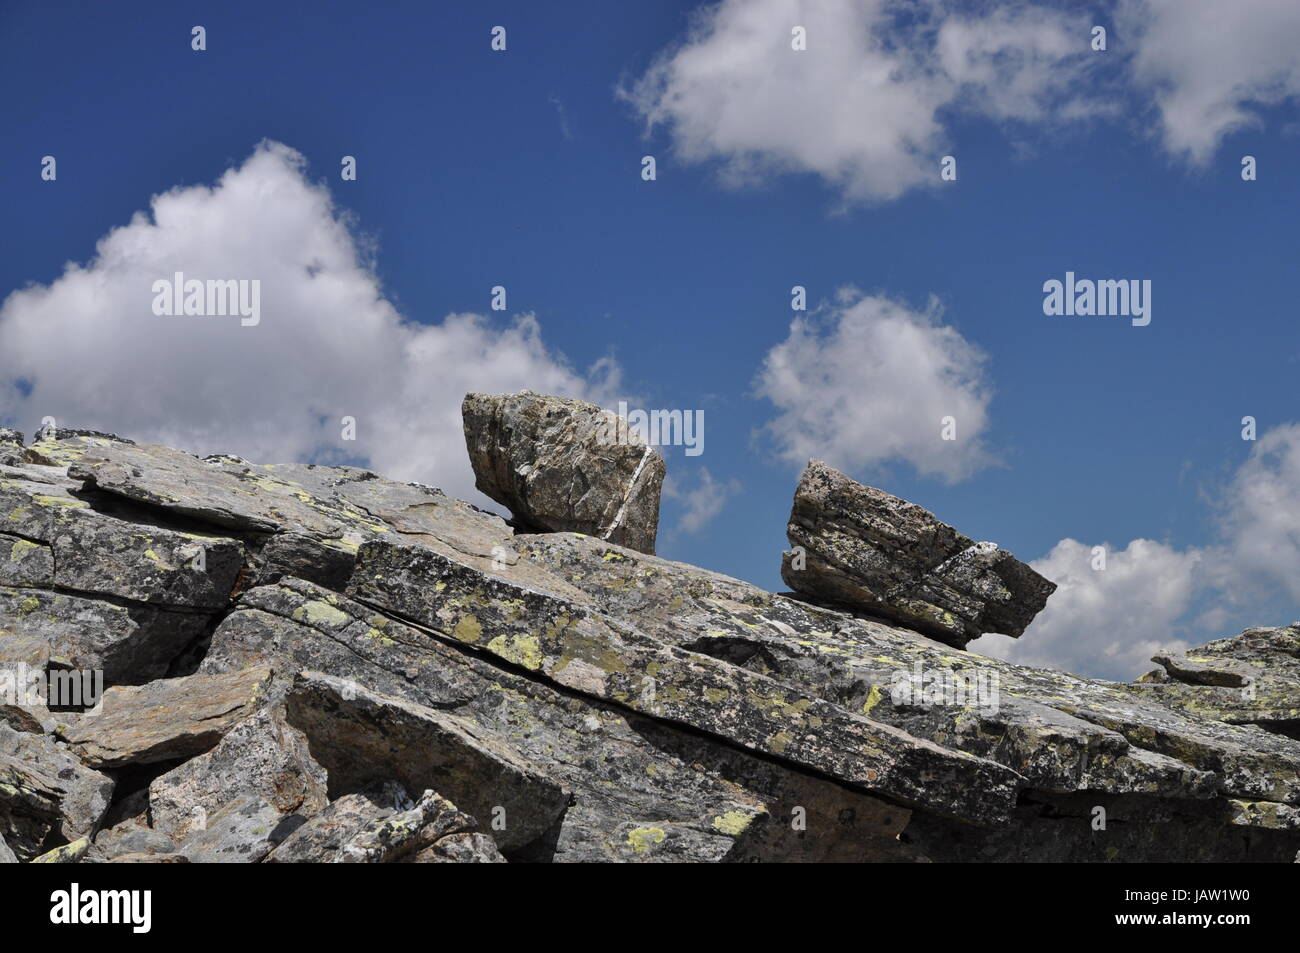 Felsen, Gebirge, stein, steine, fels, berg, natur, himmel, wolke, wolken, landschaft, zwei, urgestein, gneis Stock Photo